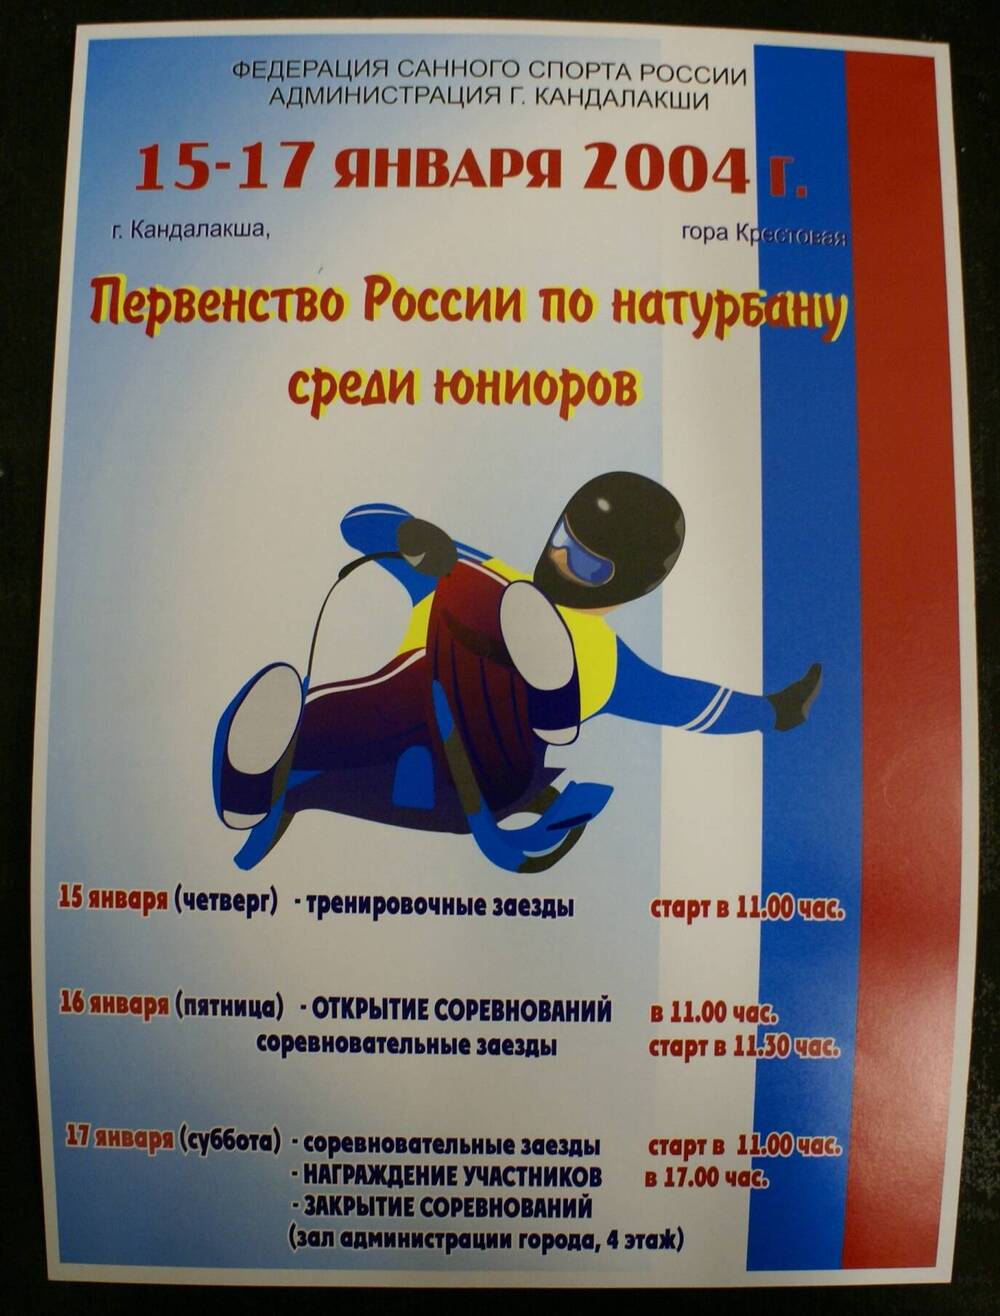 Афиша цветная первенства России по натурбану среди юниоров с программой на 15-17 января 2004 г.